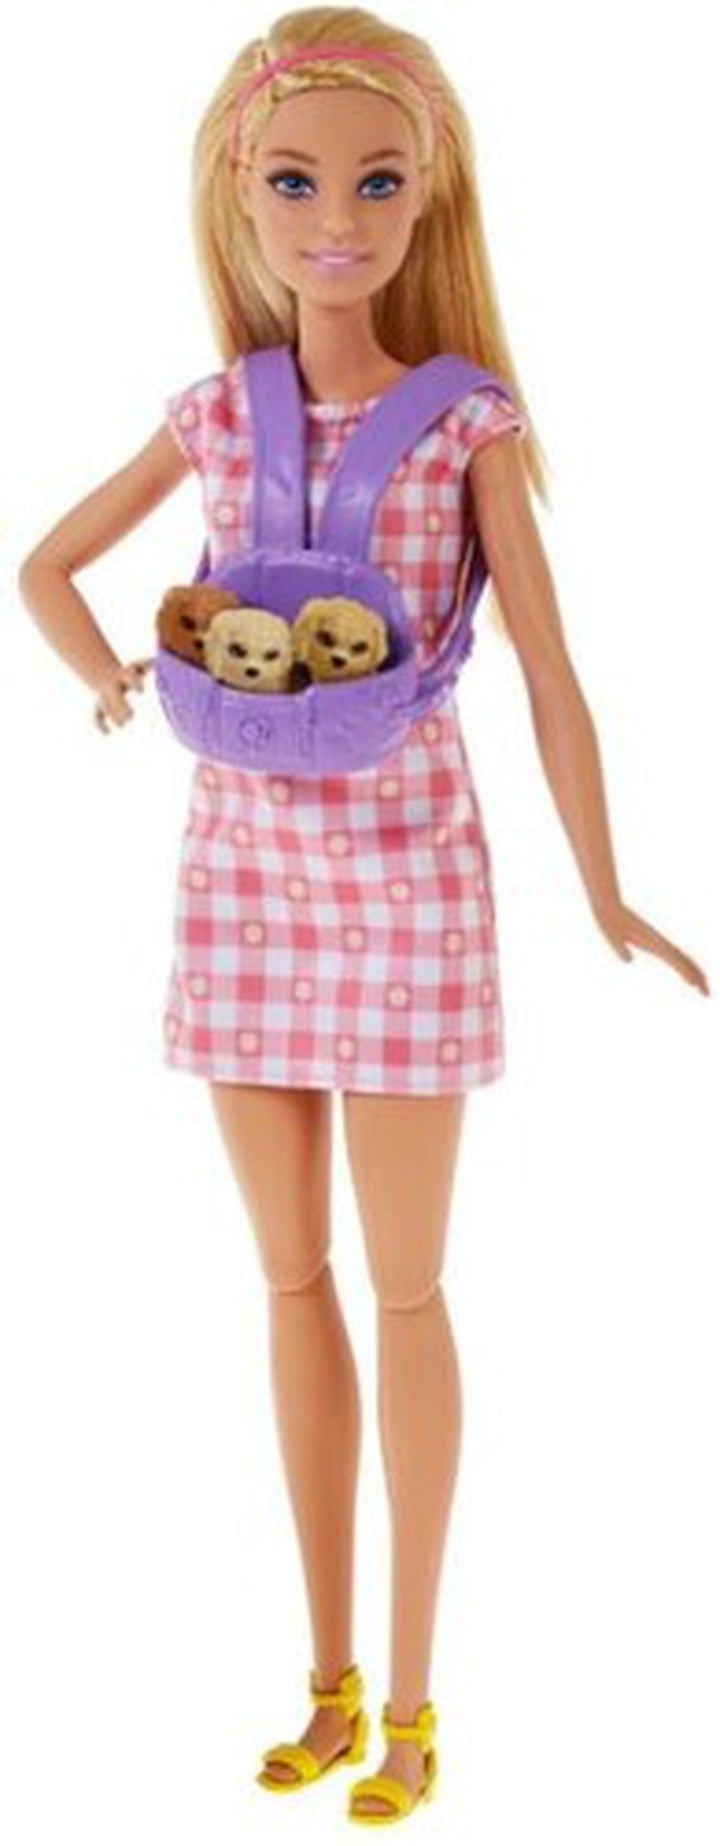 Mattel - Barbie Doll and Newborn Puppies Playset, Blonde